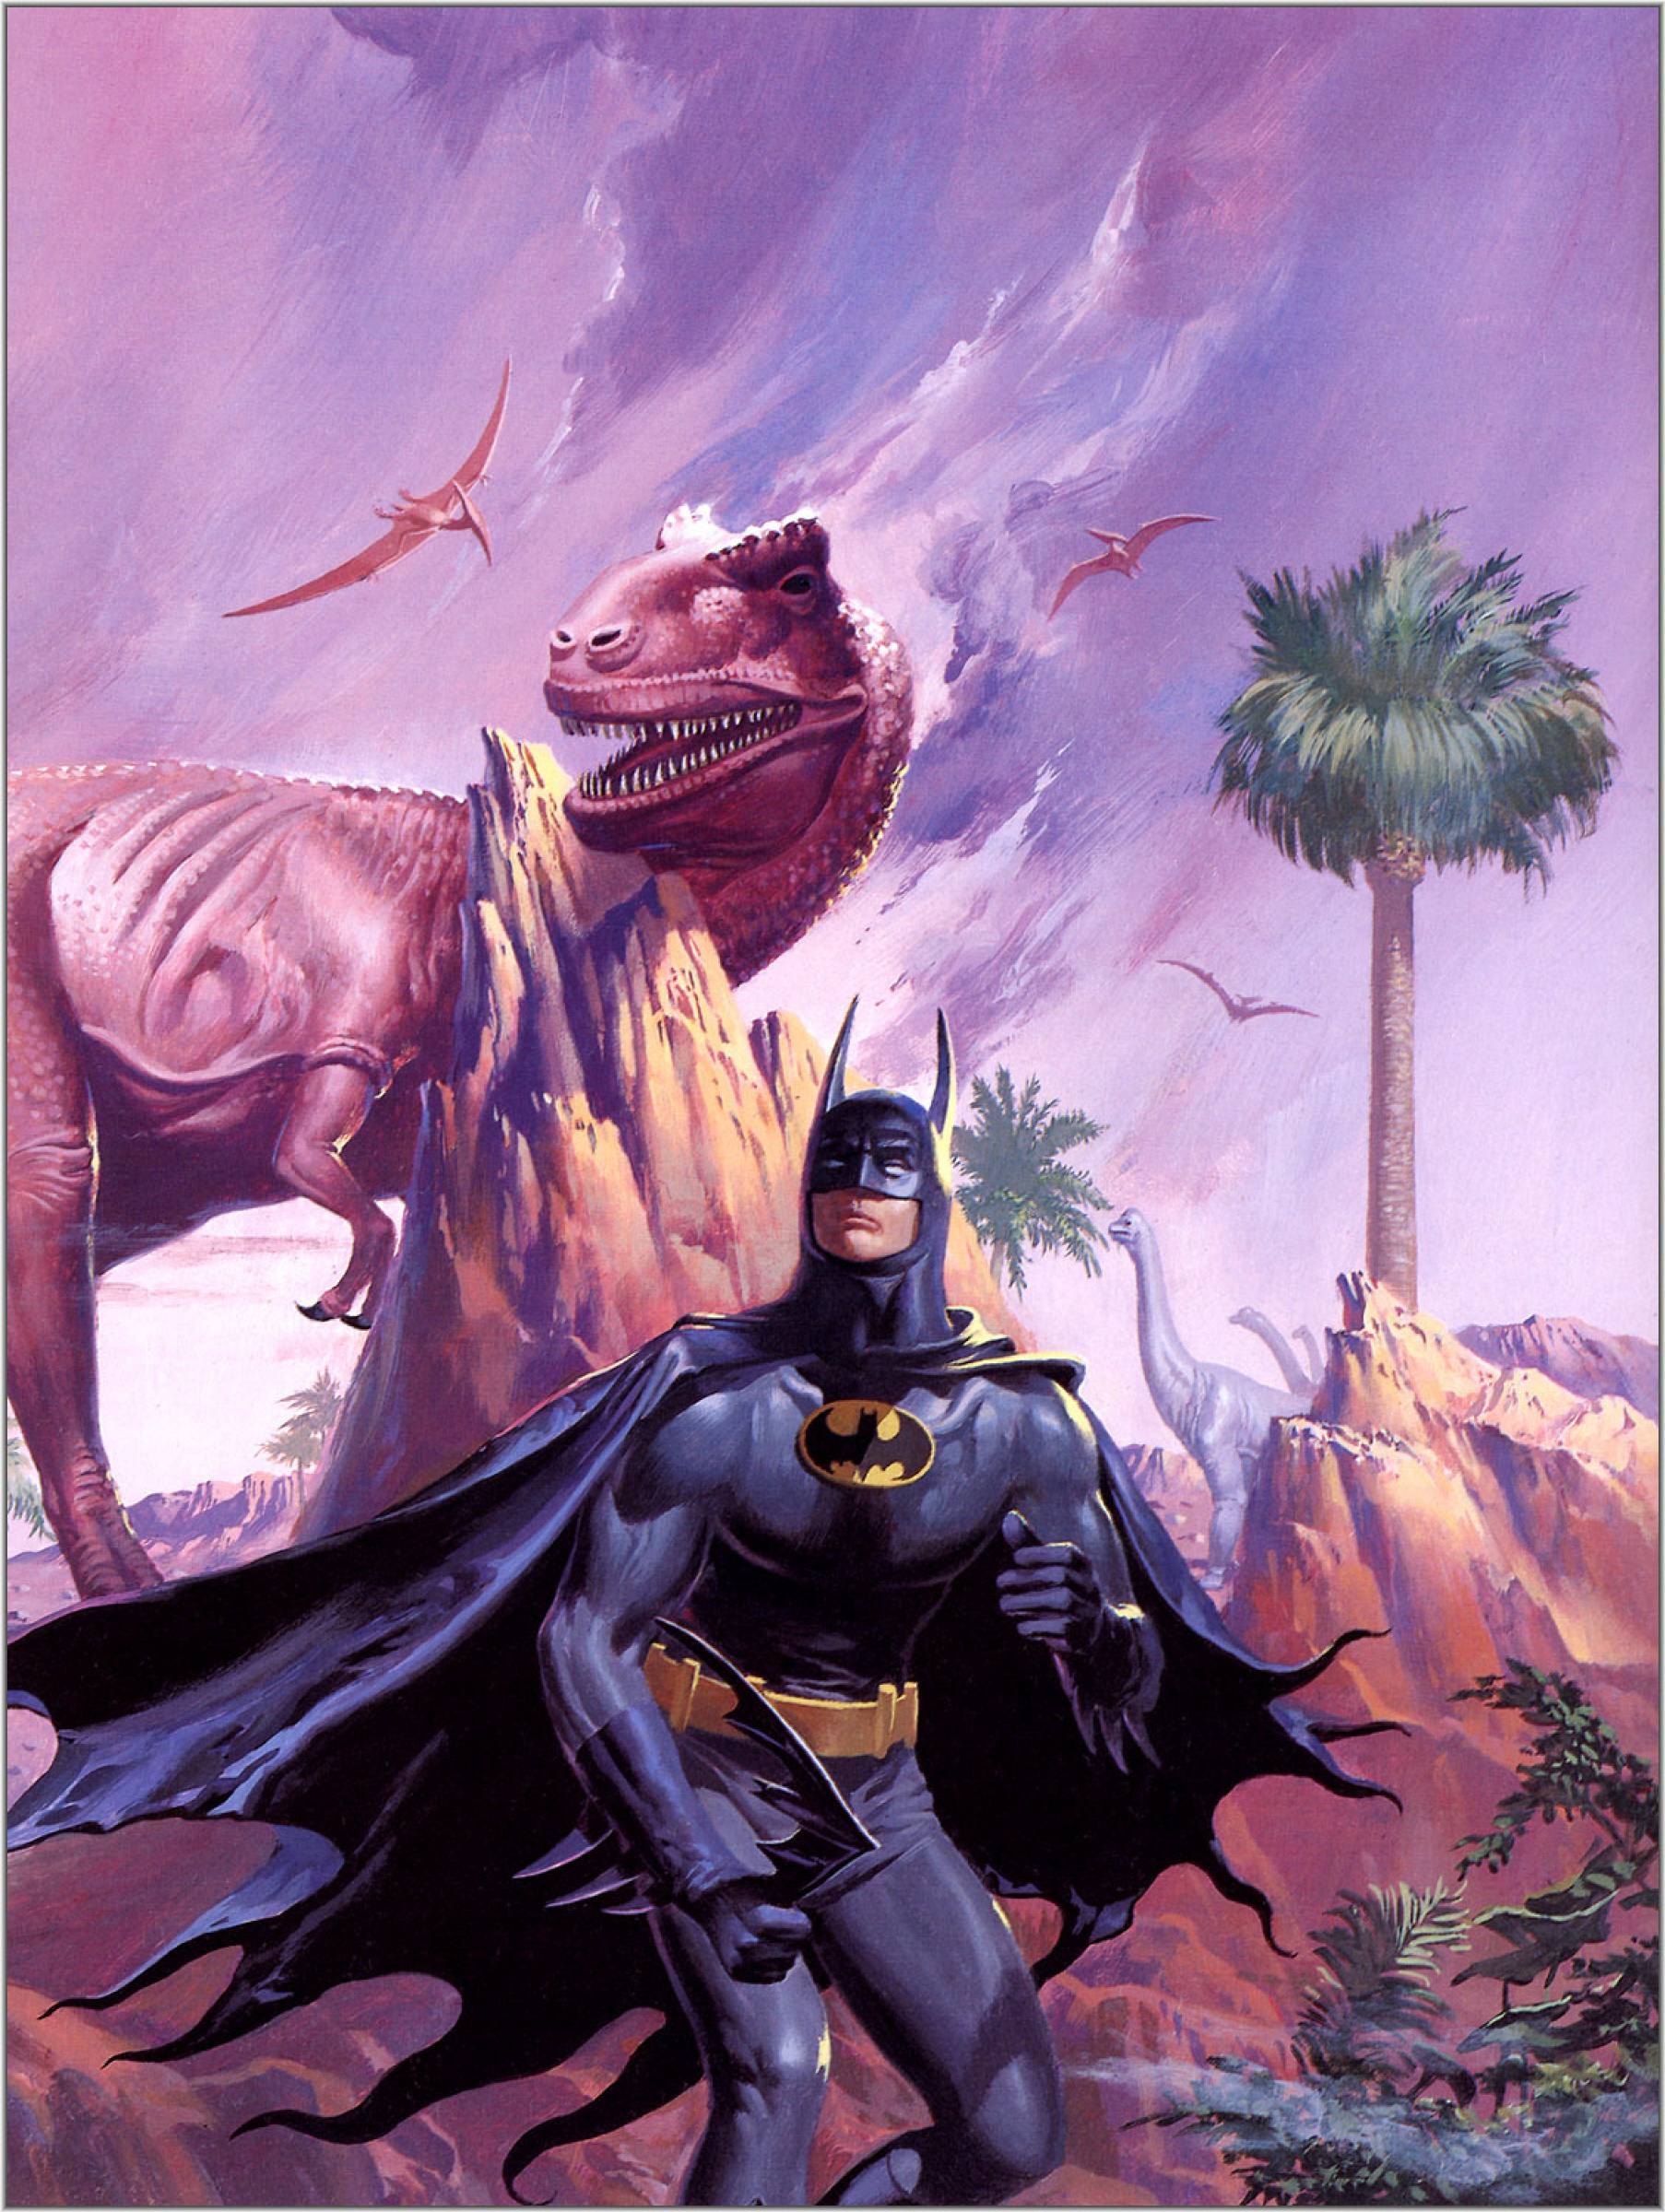 Vincent Dee Faith Batman and dinosaur: Description of the artwork | Arthive